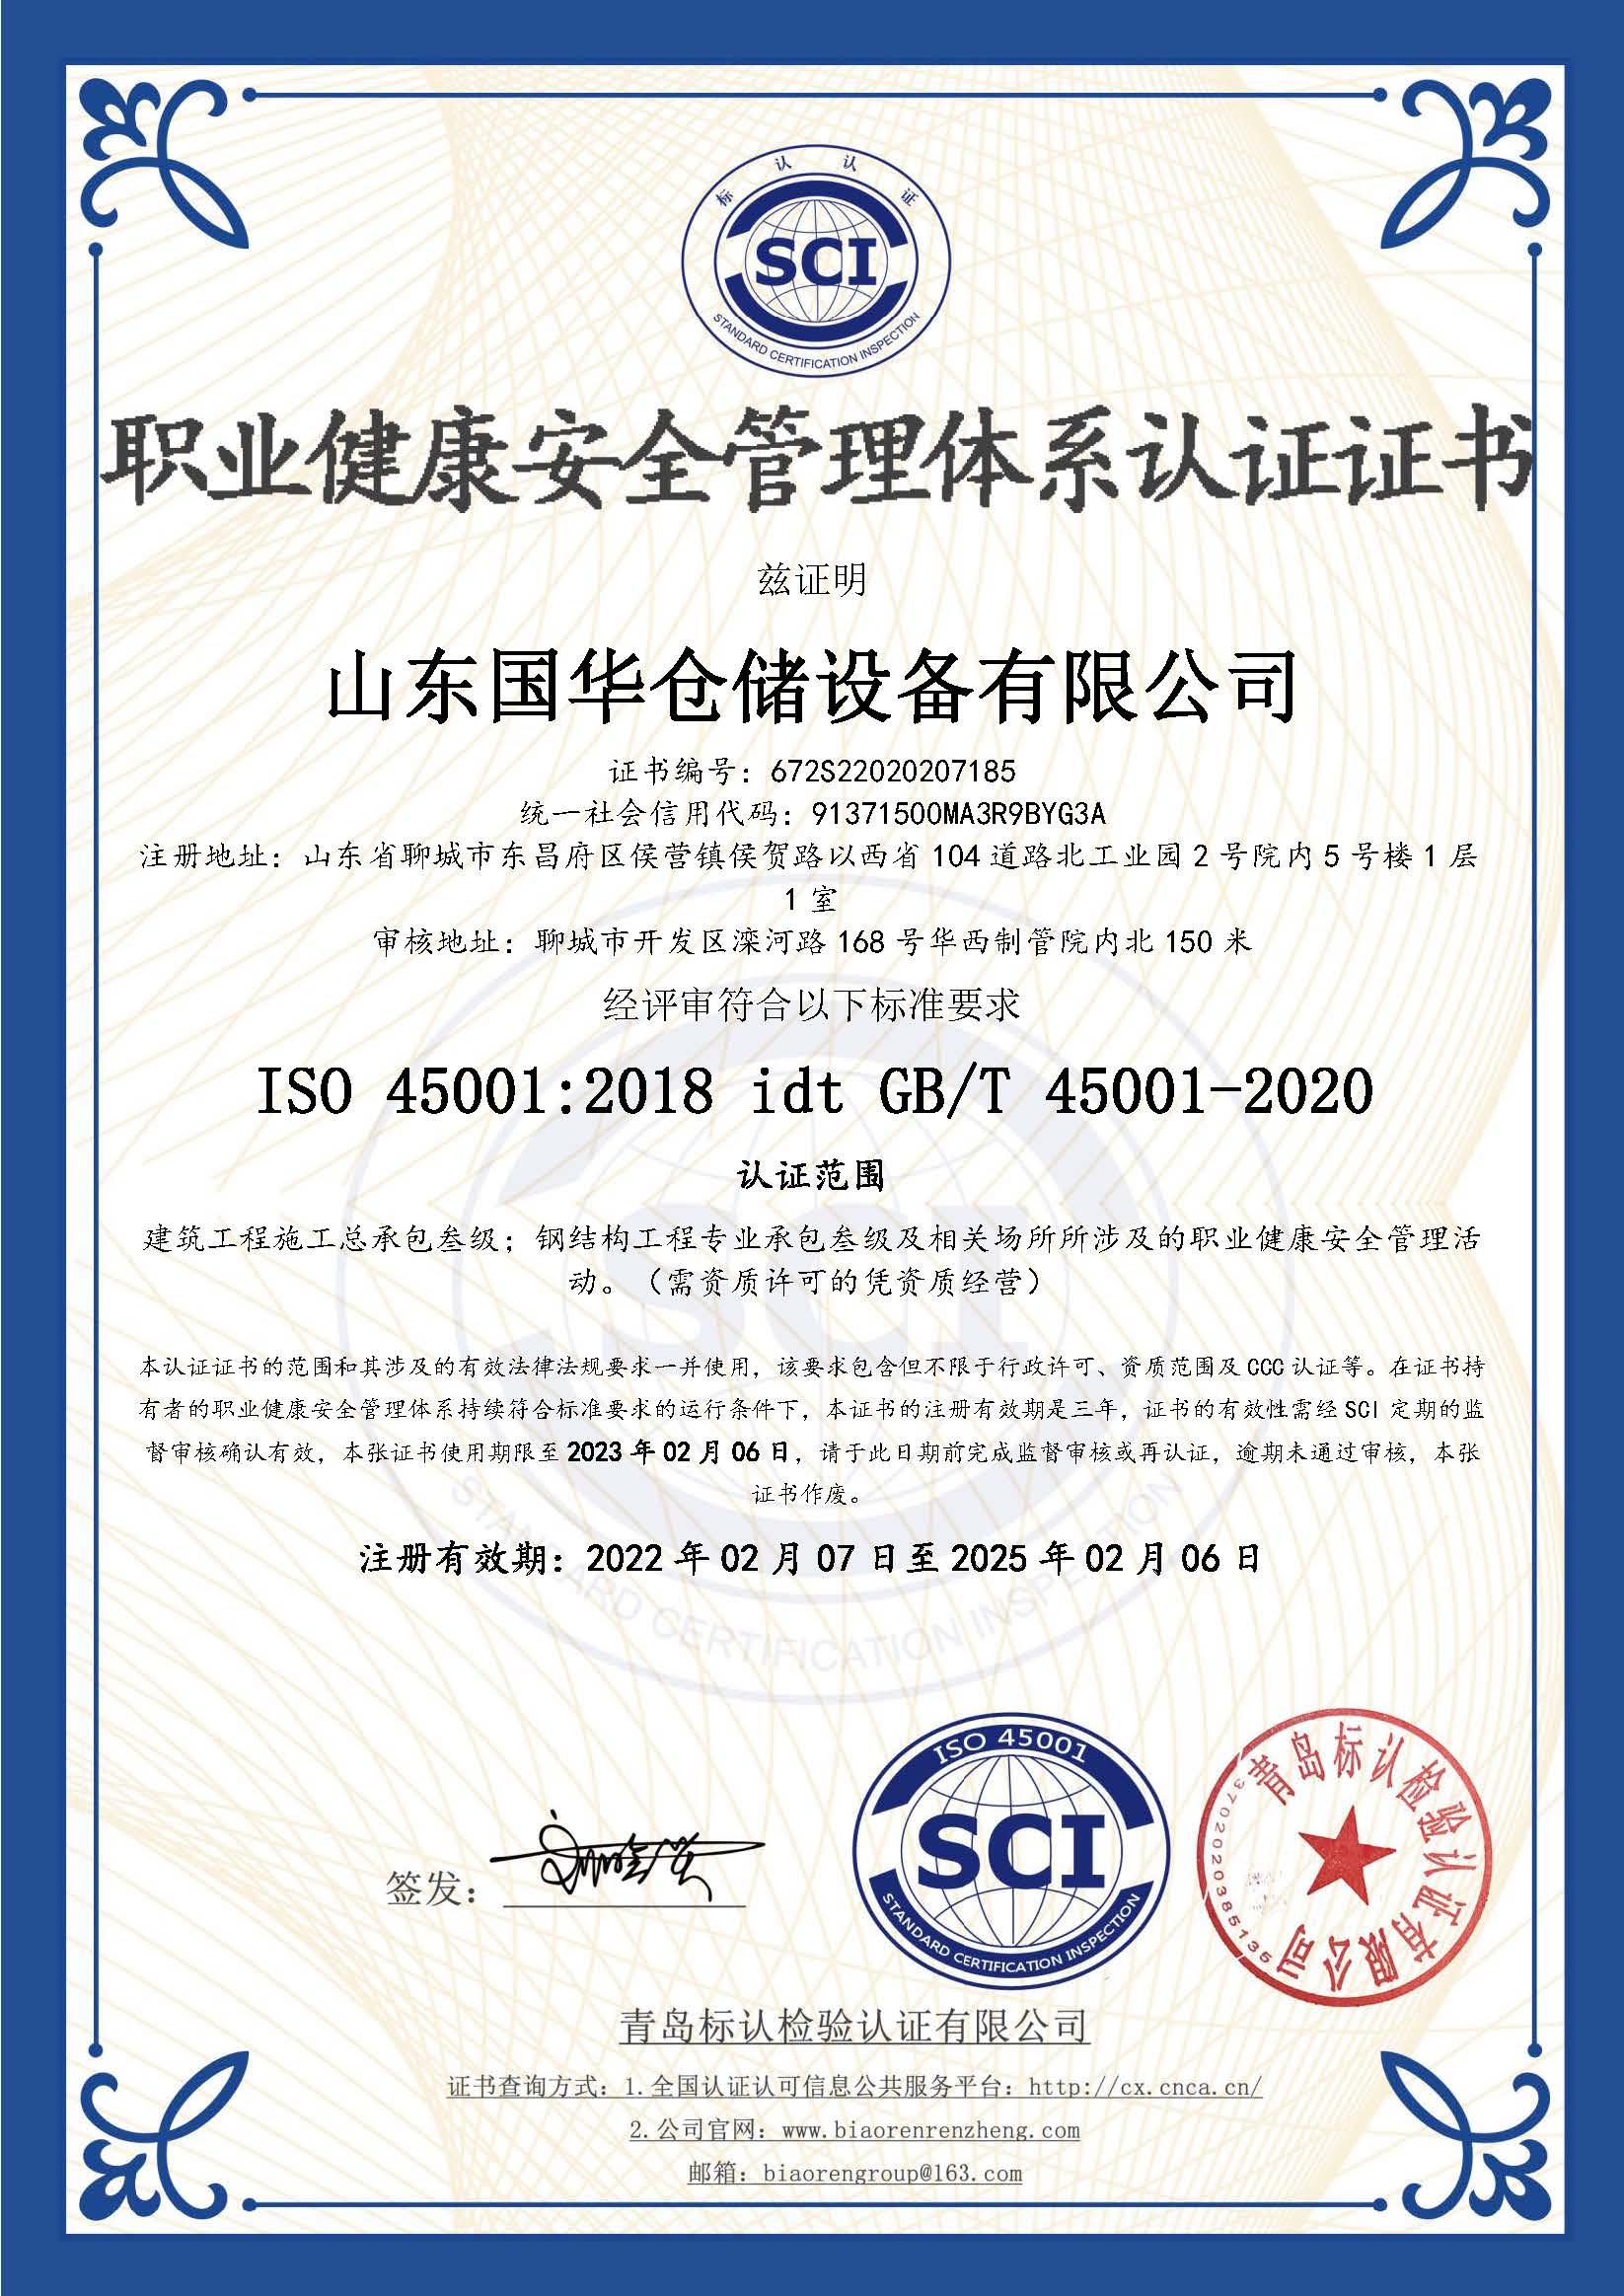 新疆钢板仓职业健康安全管理体系认证证书